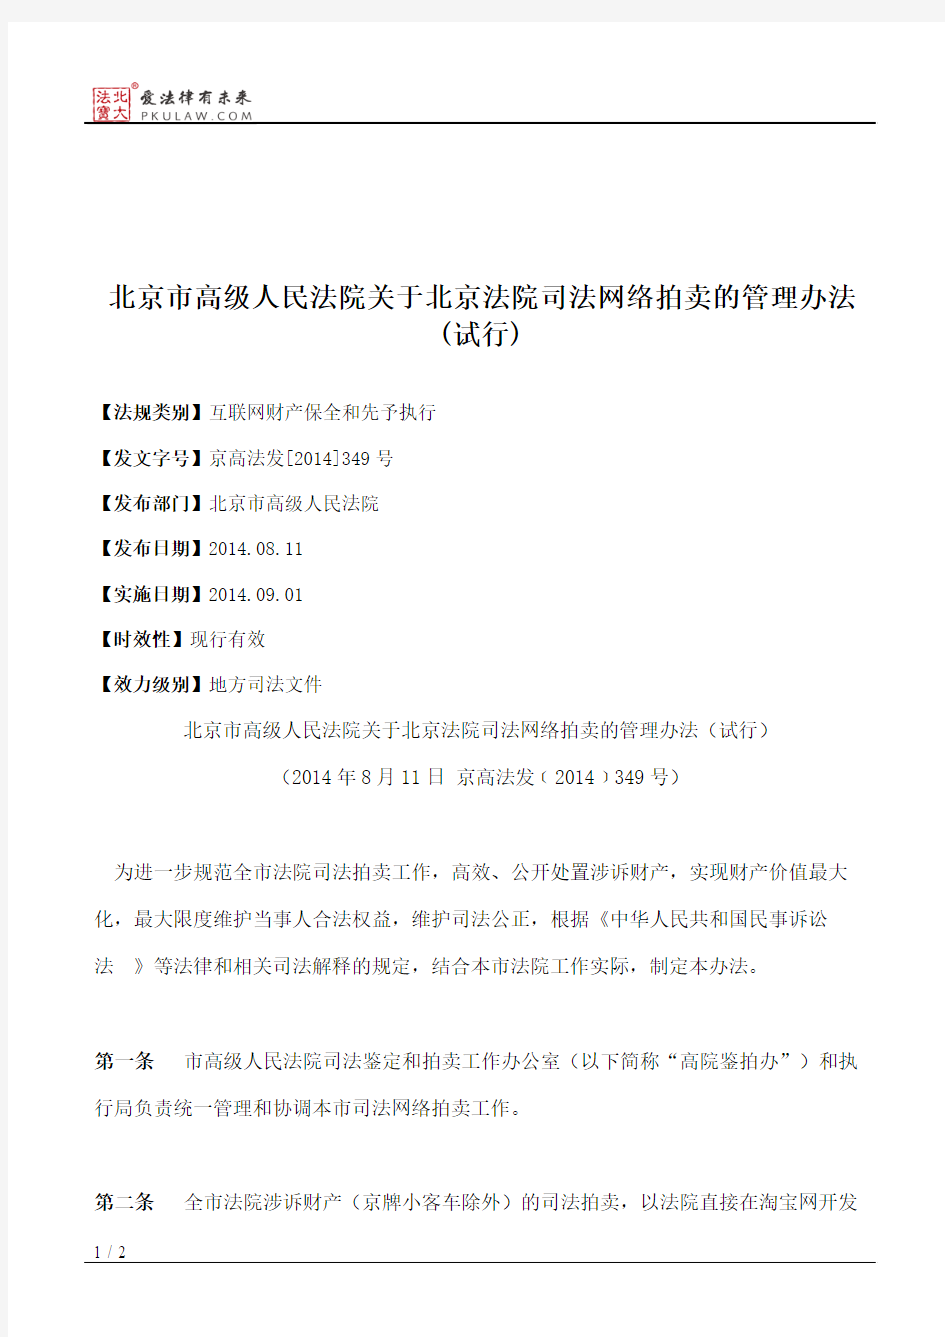 北京市高级人民法院关于北京法院司法网络拍卖的管理办法(试行)